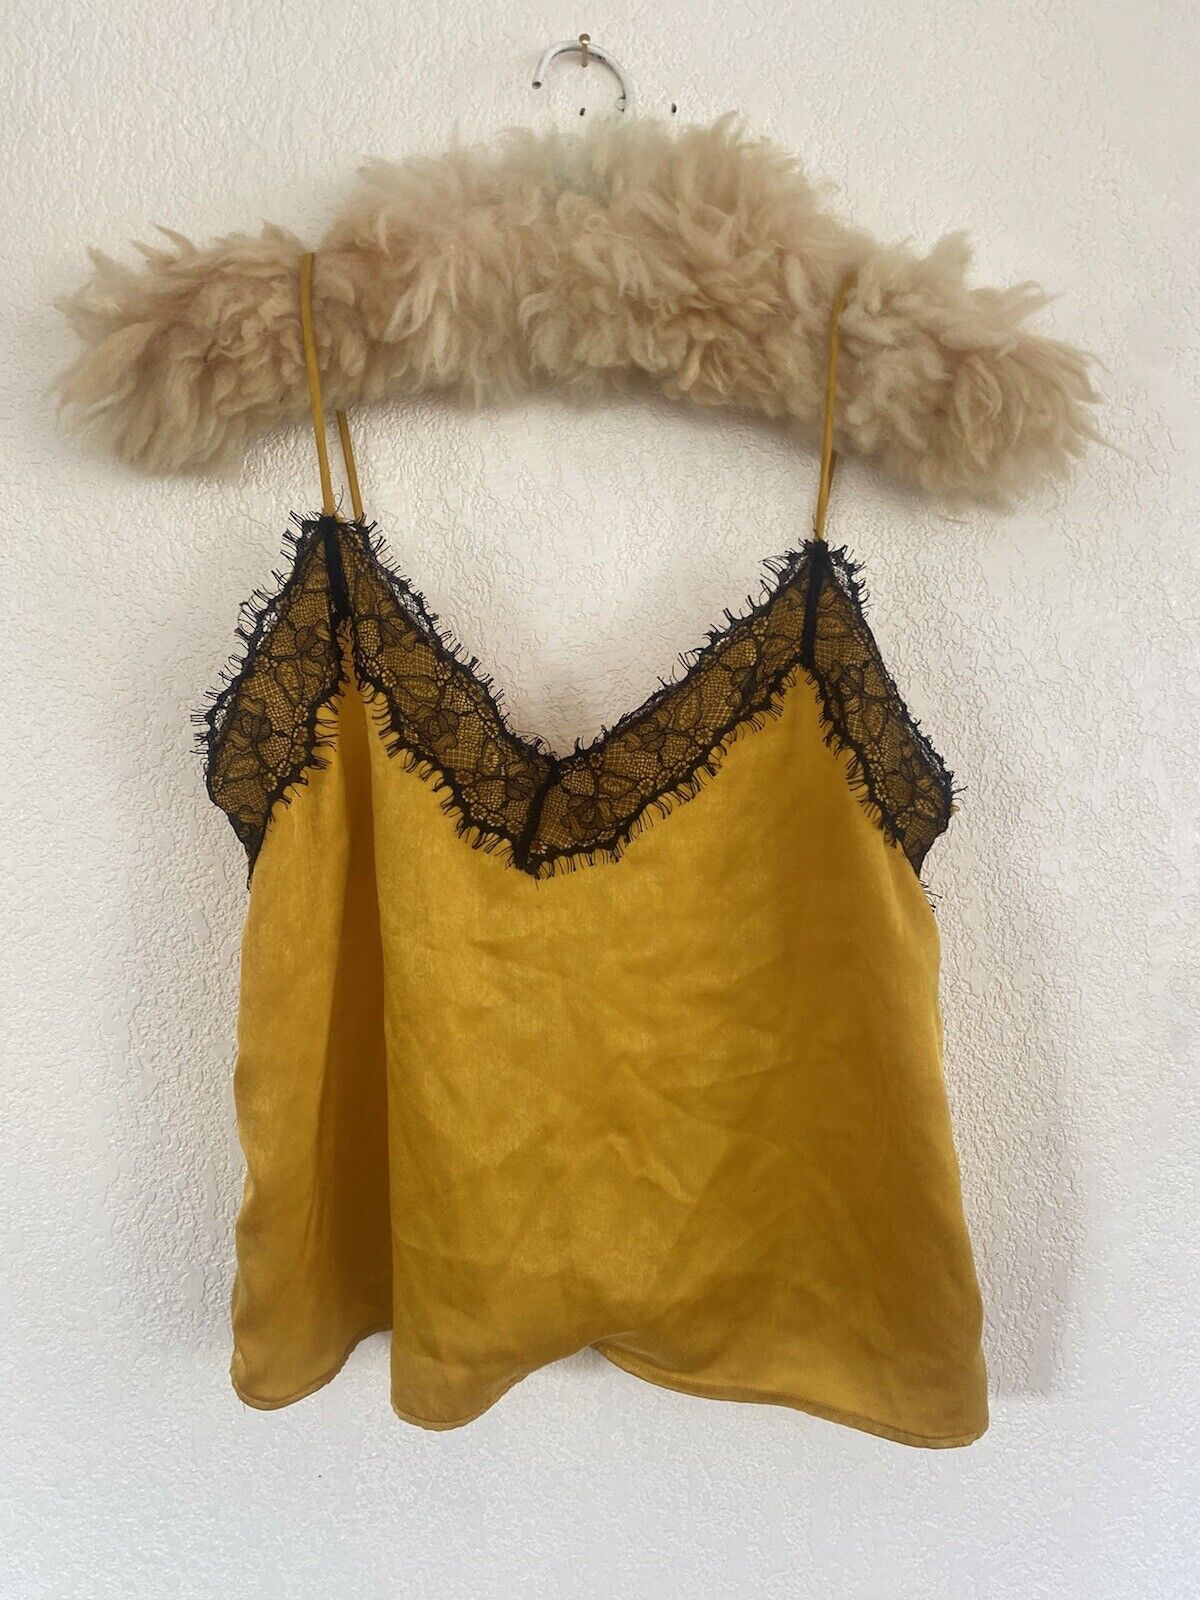 Shimmery Gold Yellow Camisole - Bershka - Women’s Medium